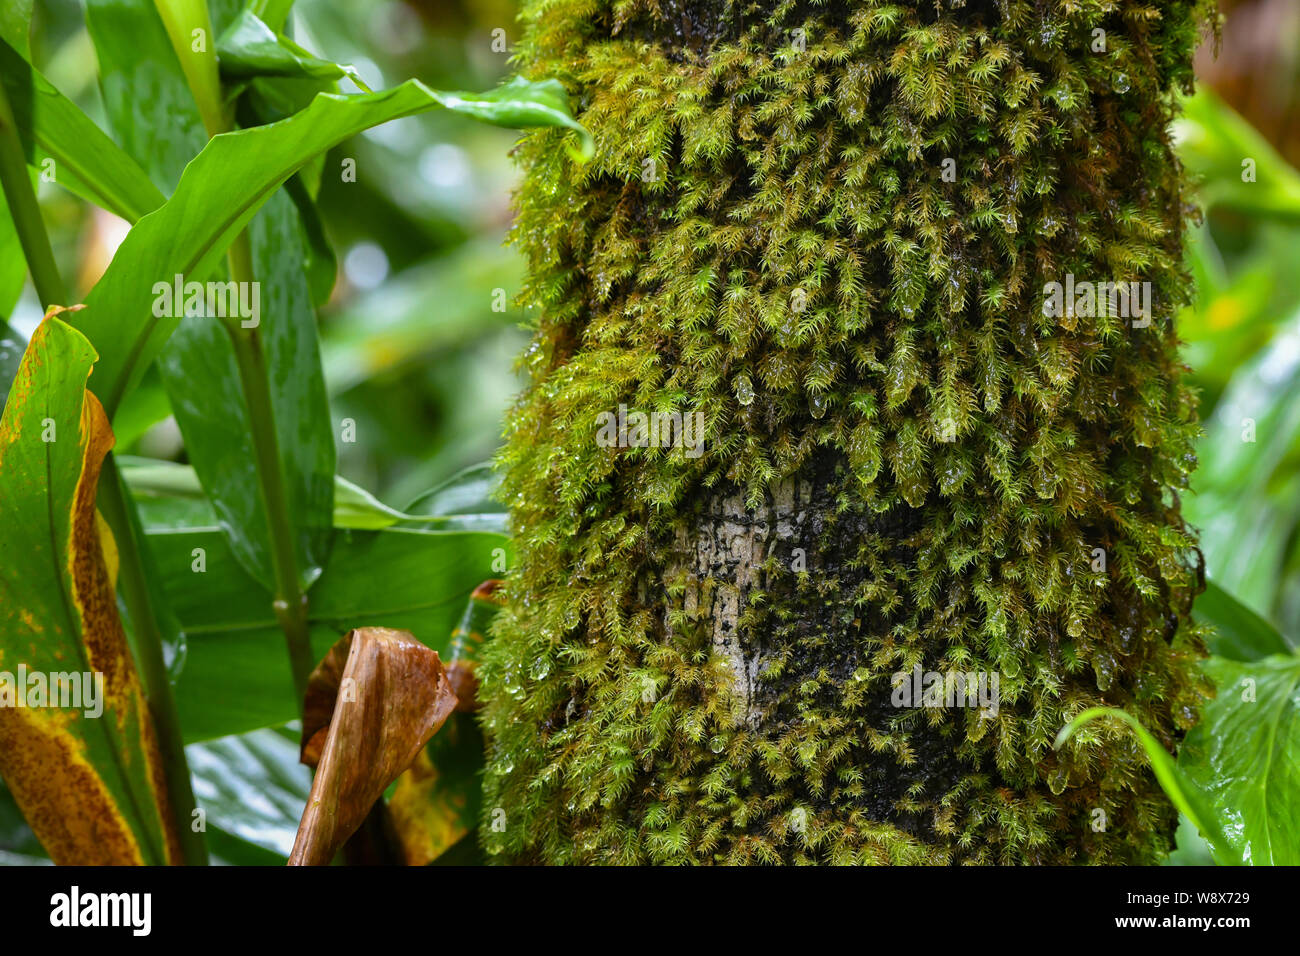 Regen fällt auf Moss in der El Yunque rainforest - Puerto Rico National Forest - Moos wächst auf einem Baum in der Puerto-ricanischen Dschungel Stockfoto